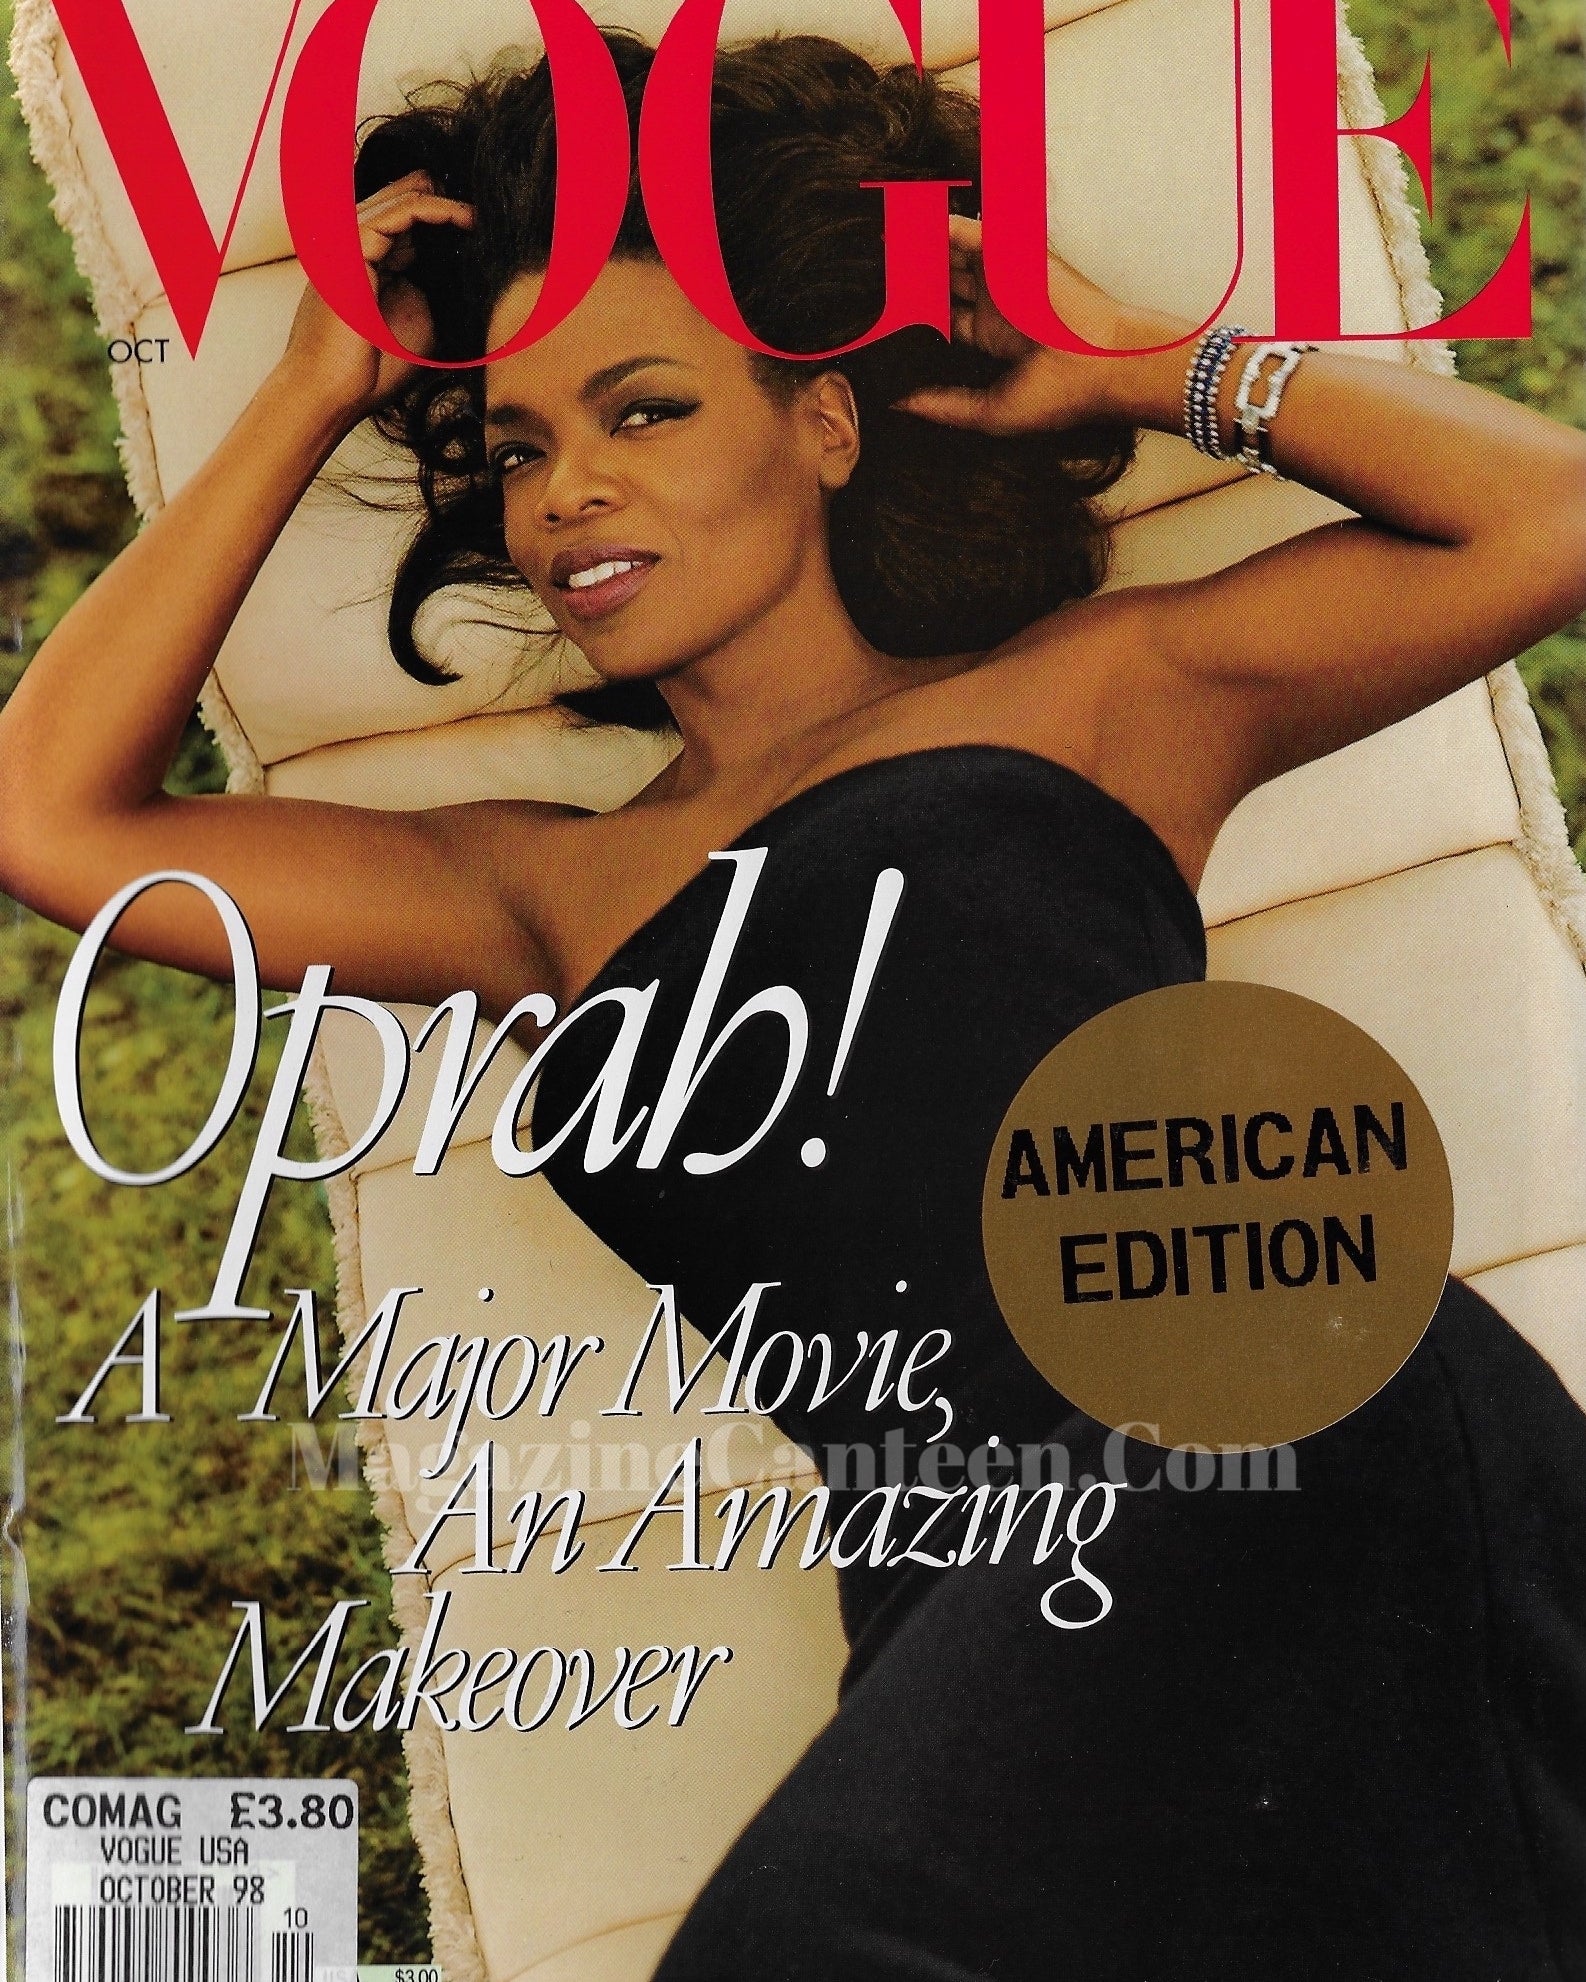 Vogue USA Magazine October 1998 - Oprah Winfrey